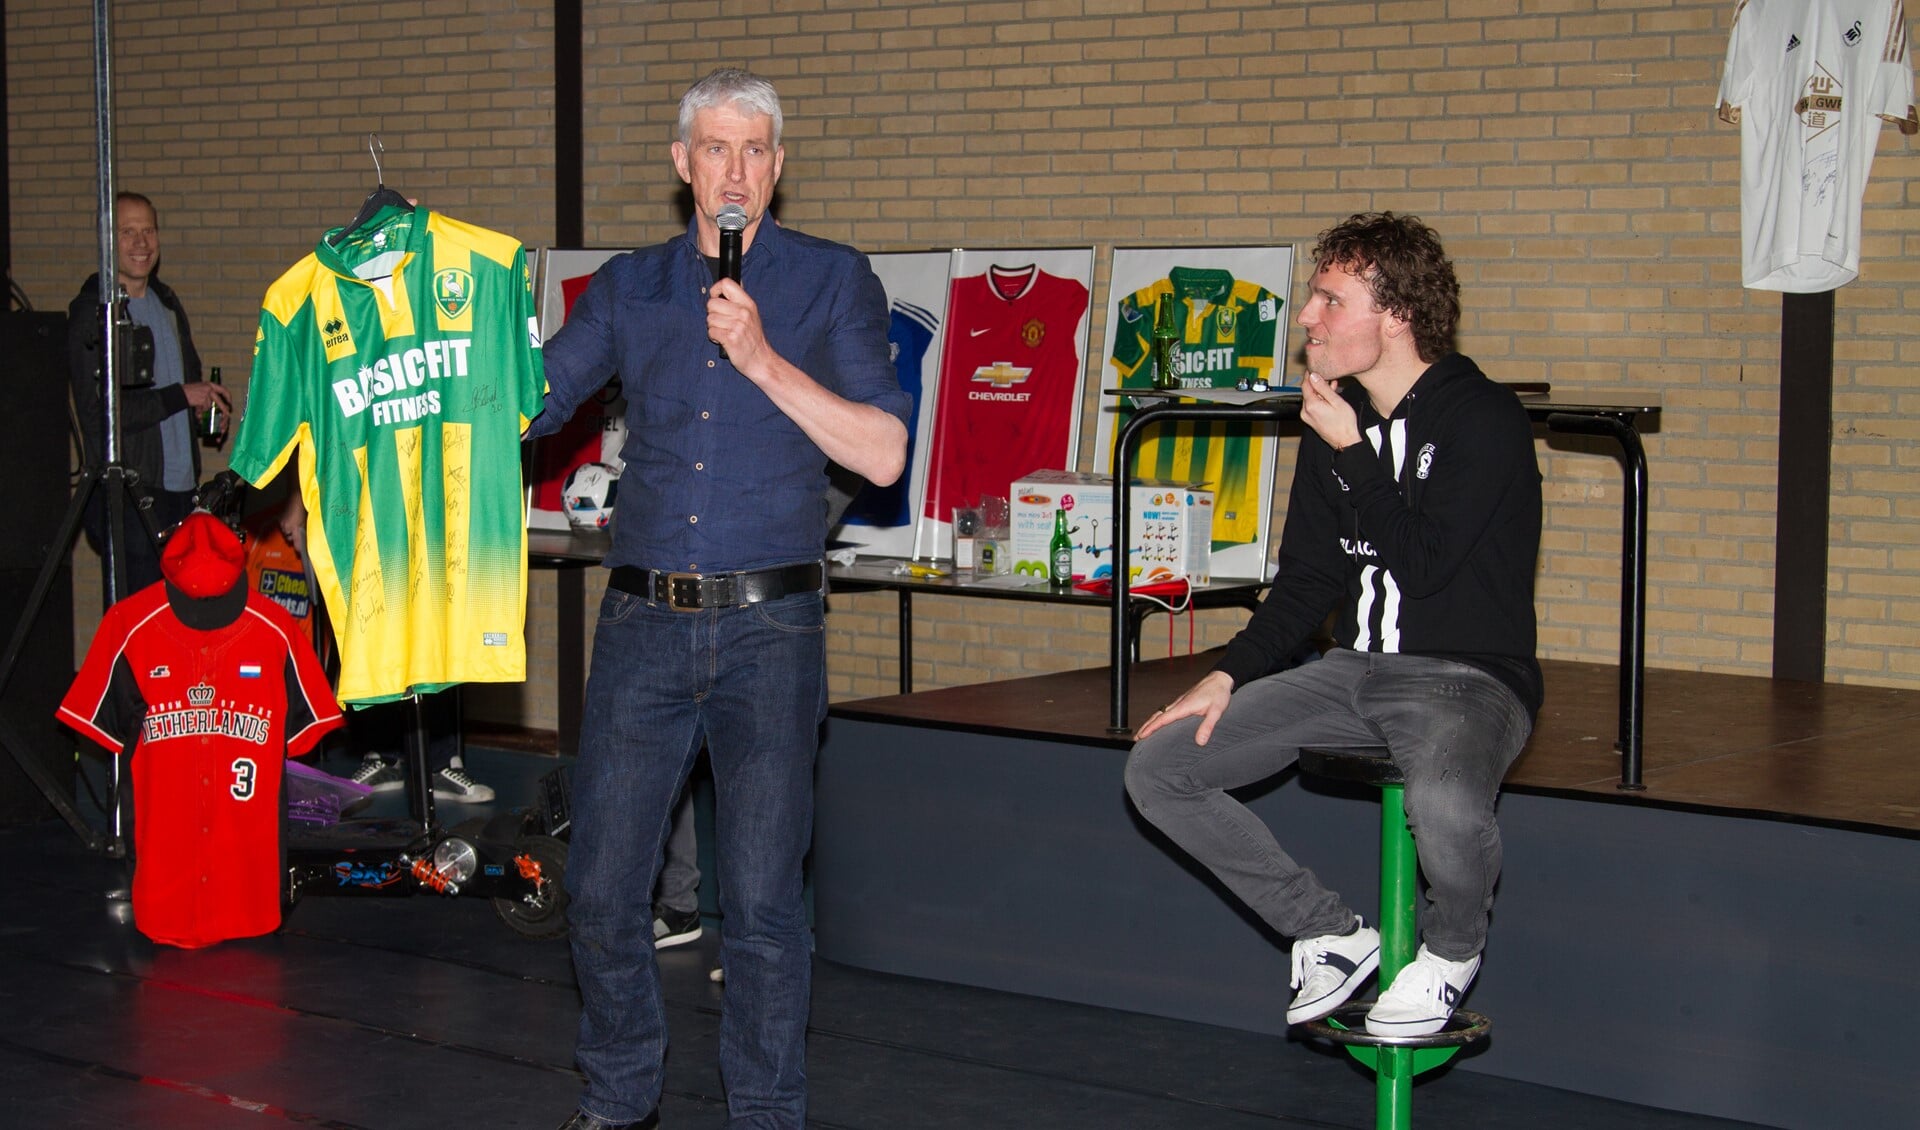 Het ADO Den Haag shirt van Tom Beugelsdijk wordt voor €600,- verkocht tijdens de veiling (foto: PR SEV/Rik Driessen).